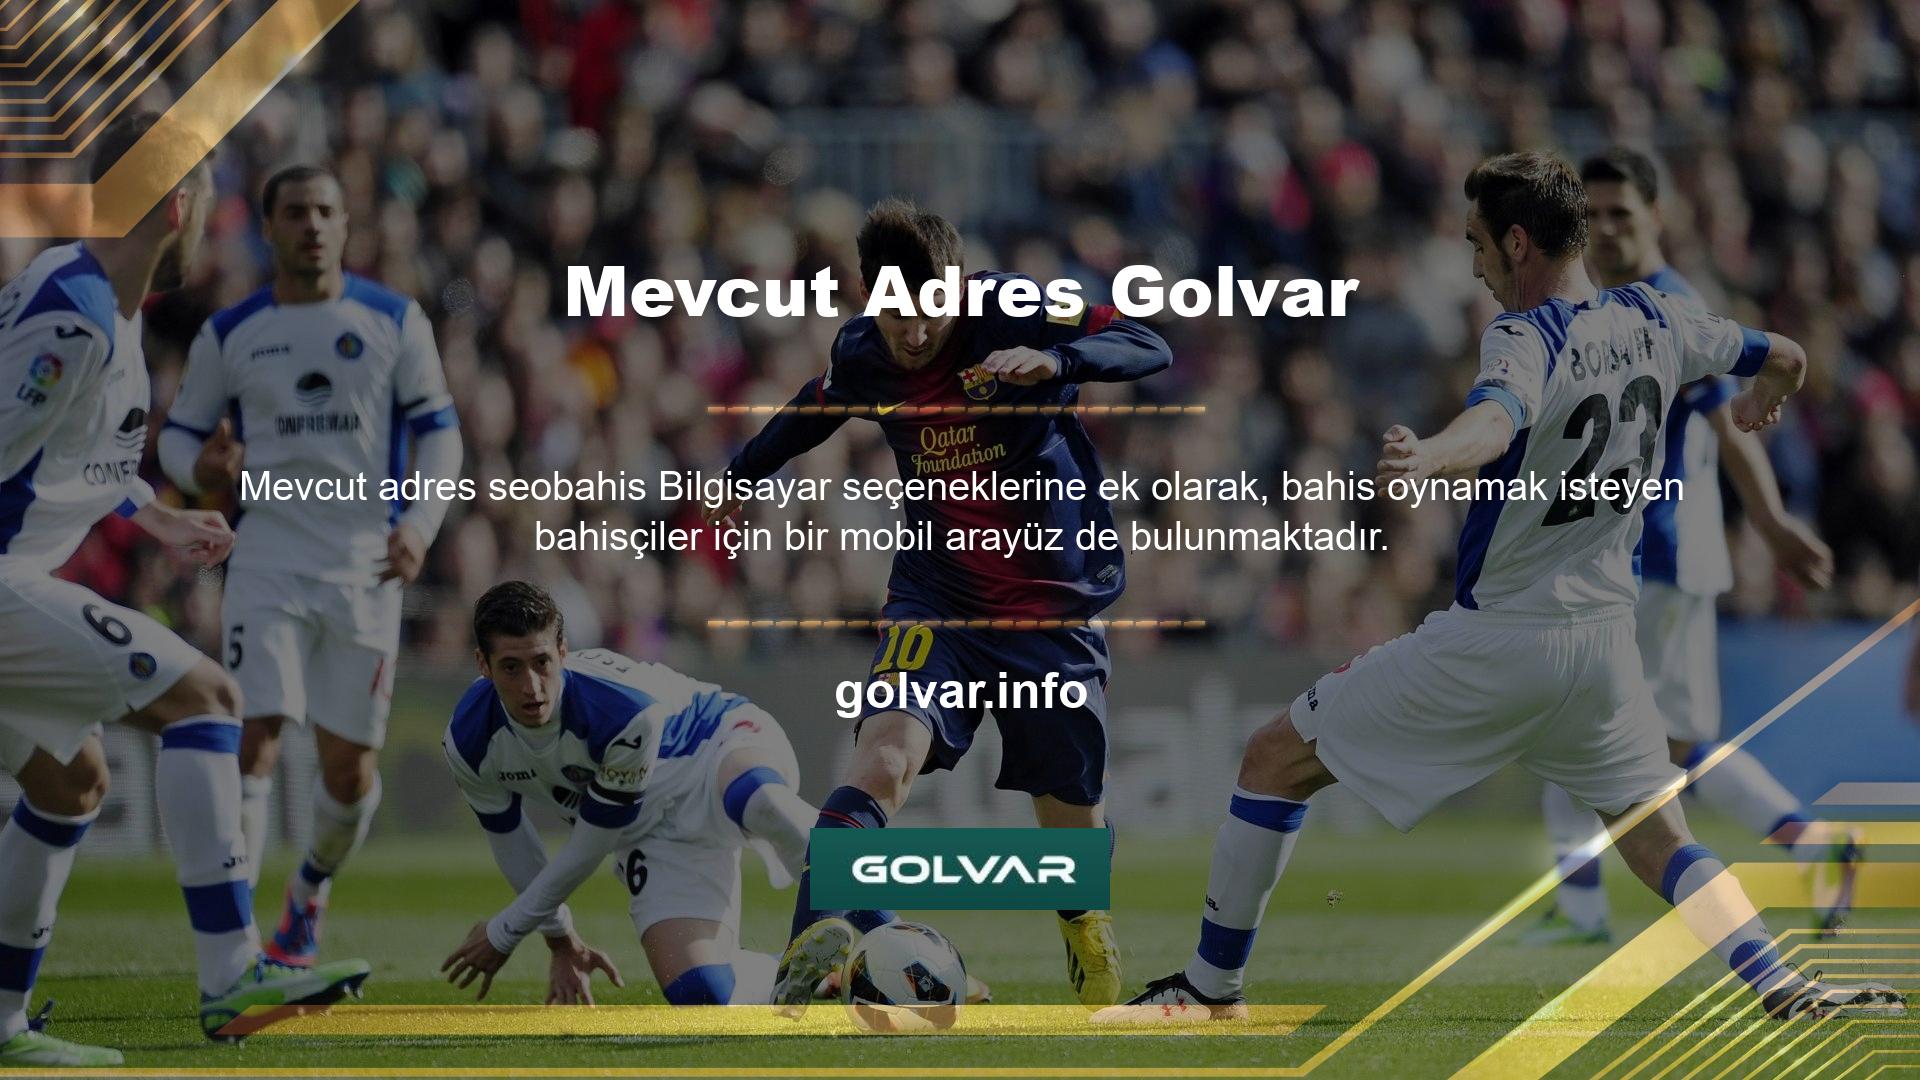 Golvar mobil programı, cep telefonlarında ve tabletlerde ticaret işlevselliği sunar